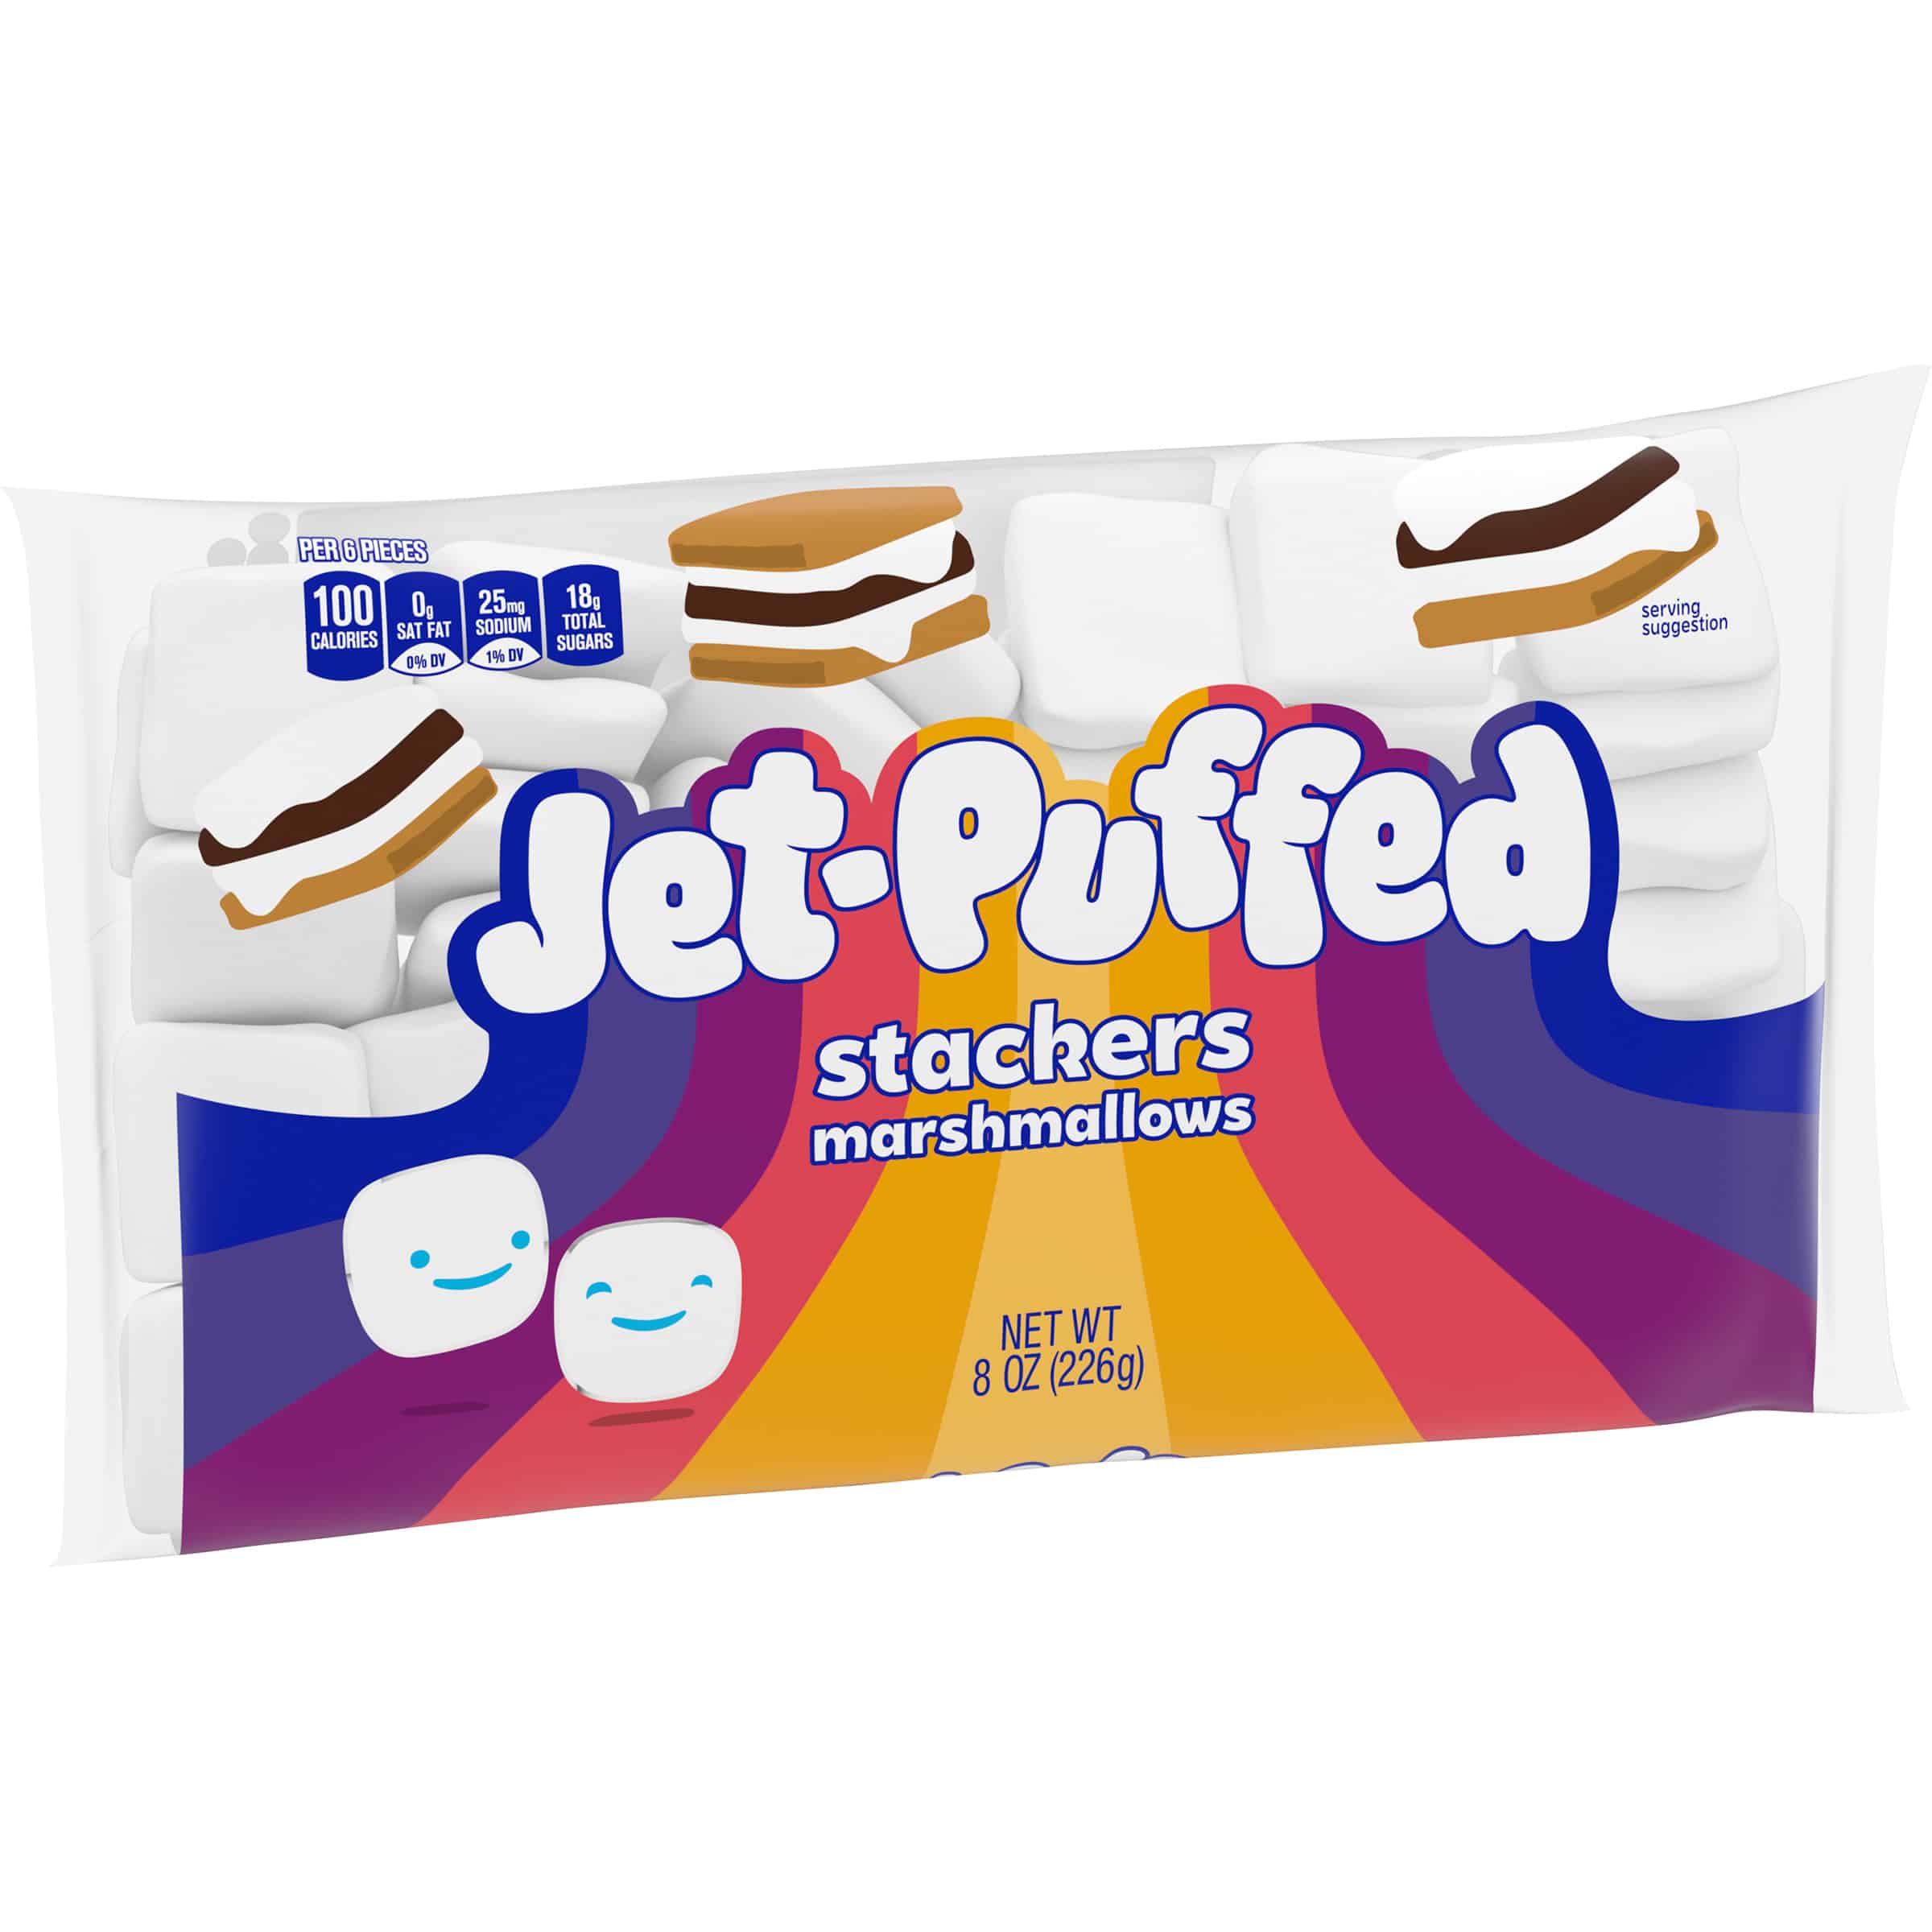 Jet-Puffed StackerMallows Marshmallows